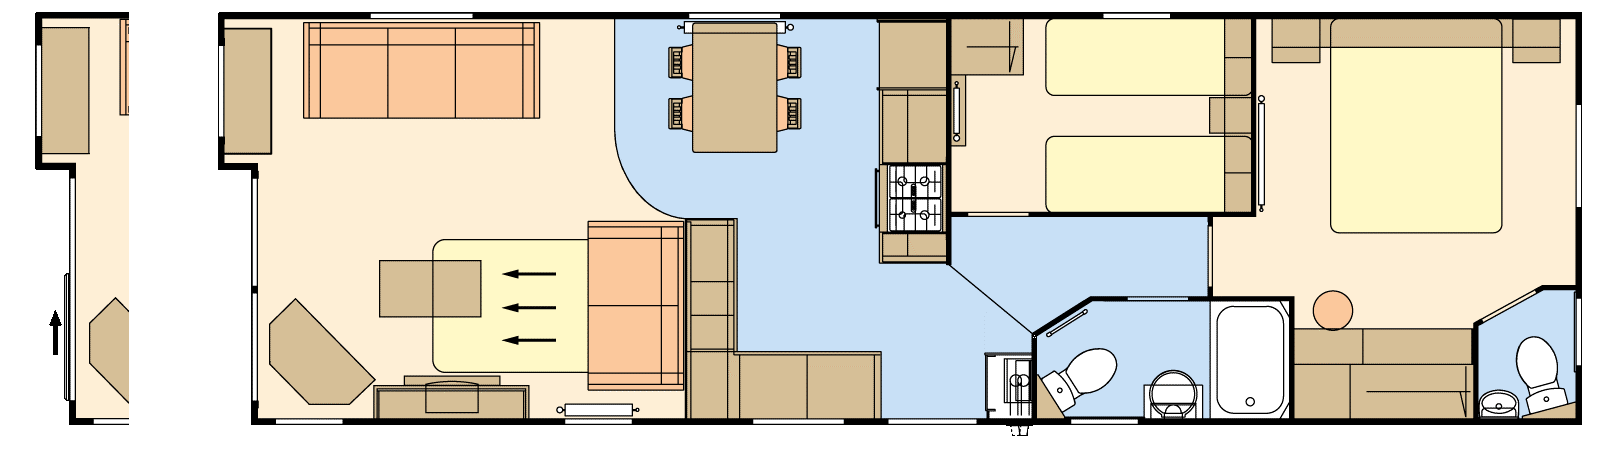 Atlas Debonair Floor Plan